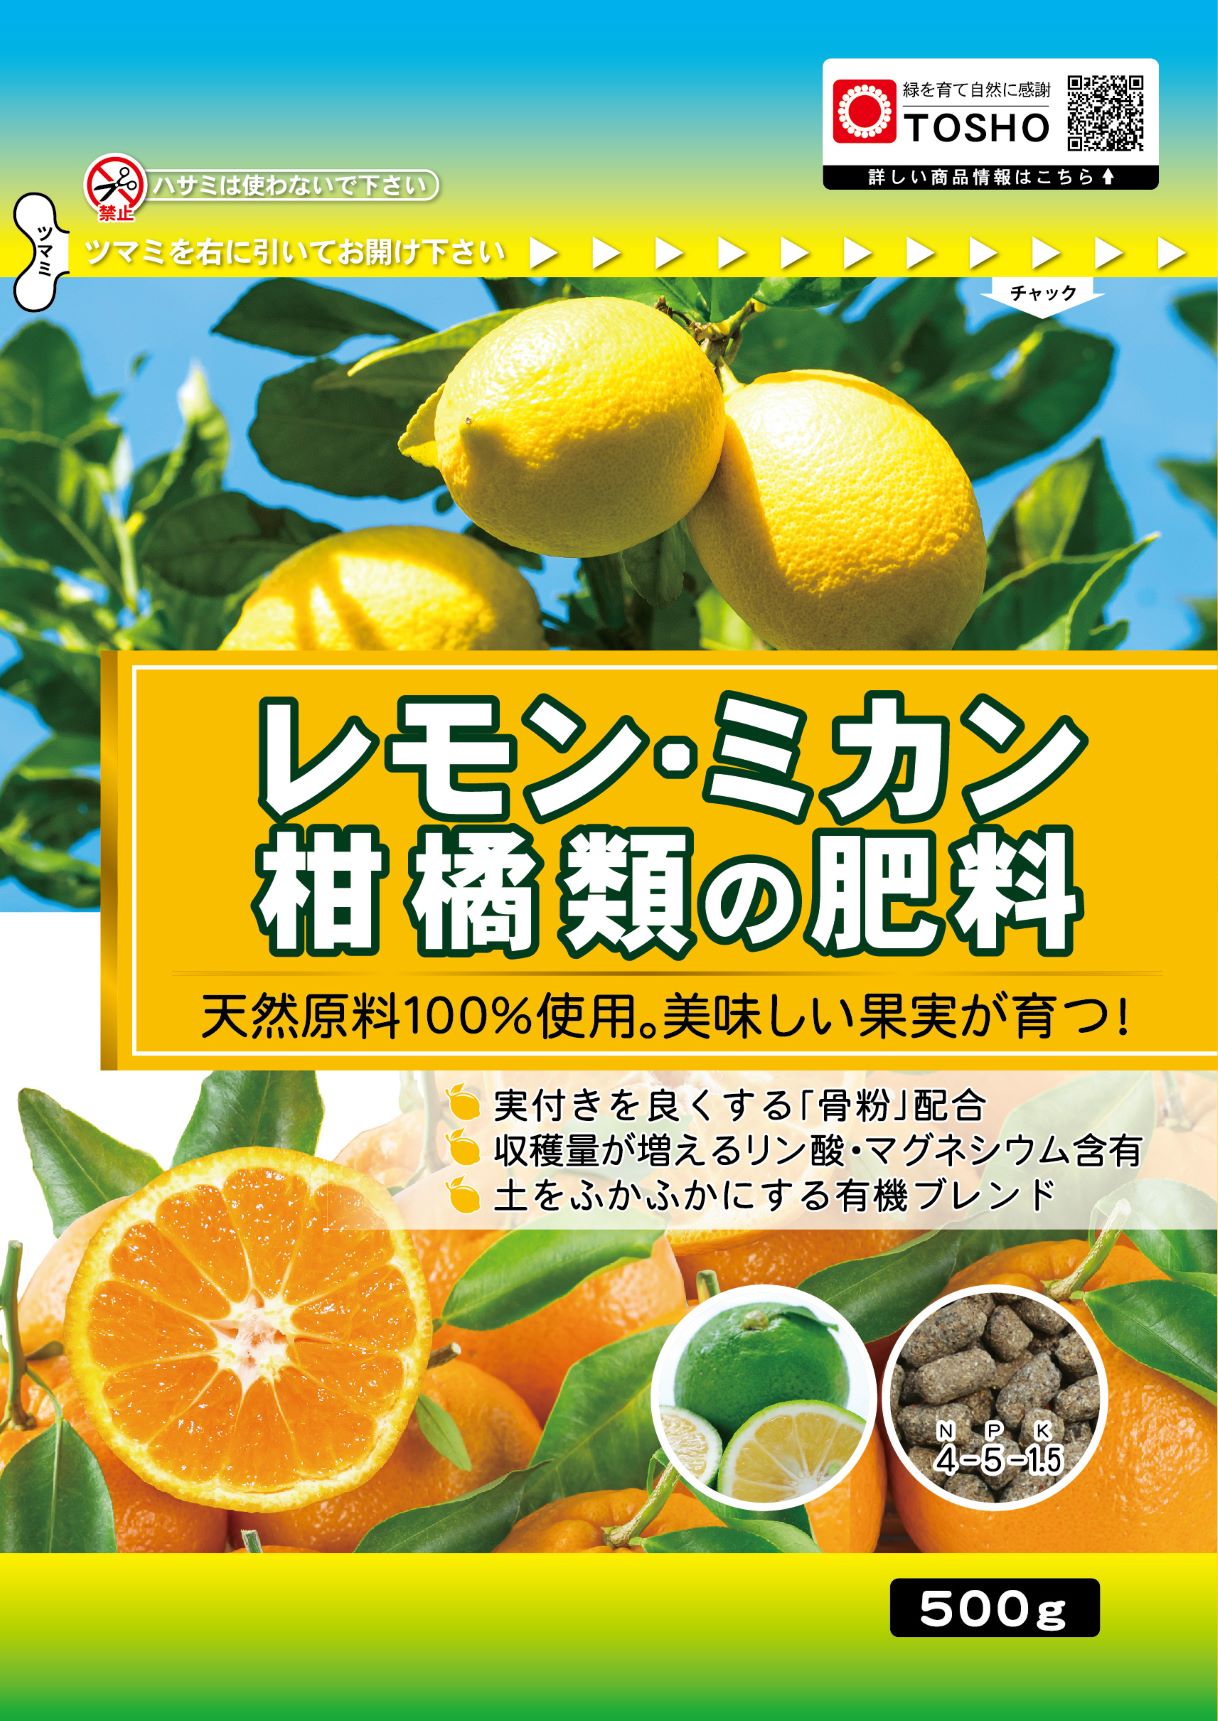 レモン・ミカン・柑橘類の肥料500g